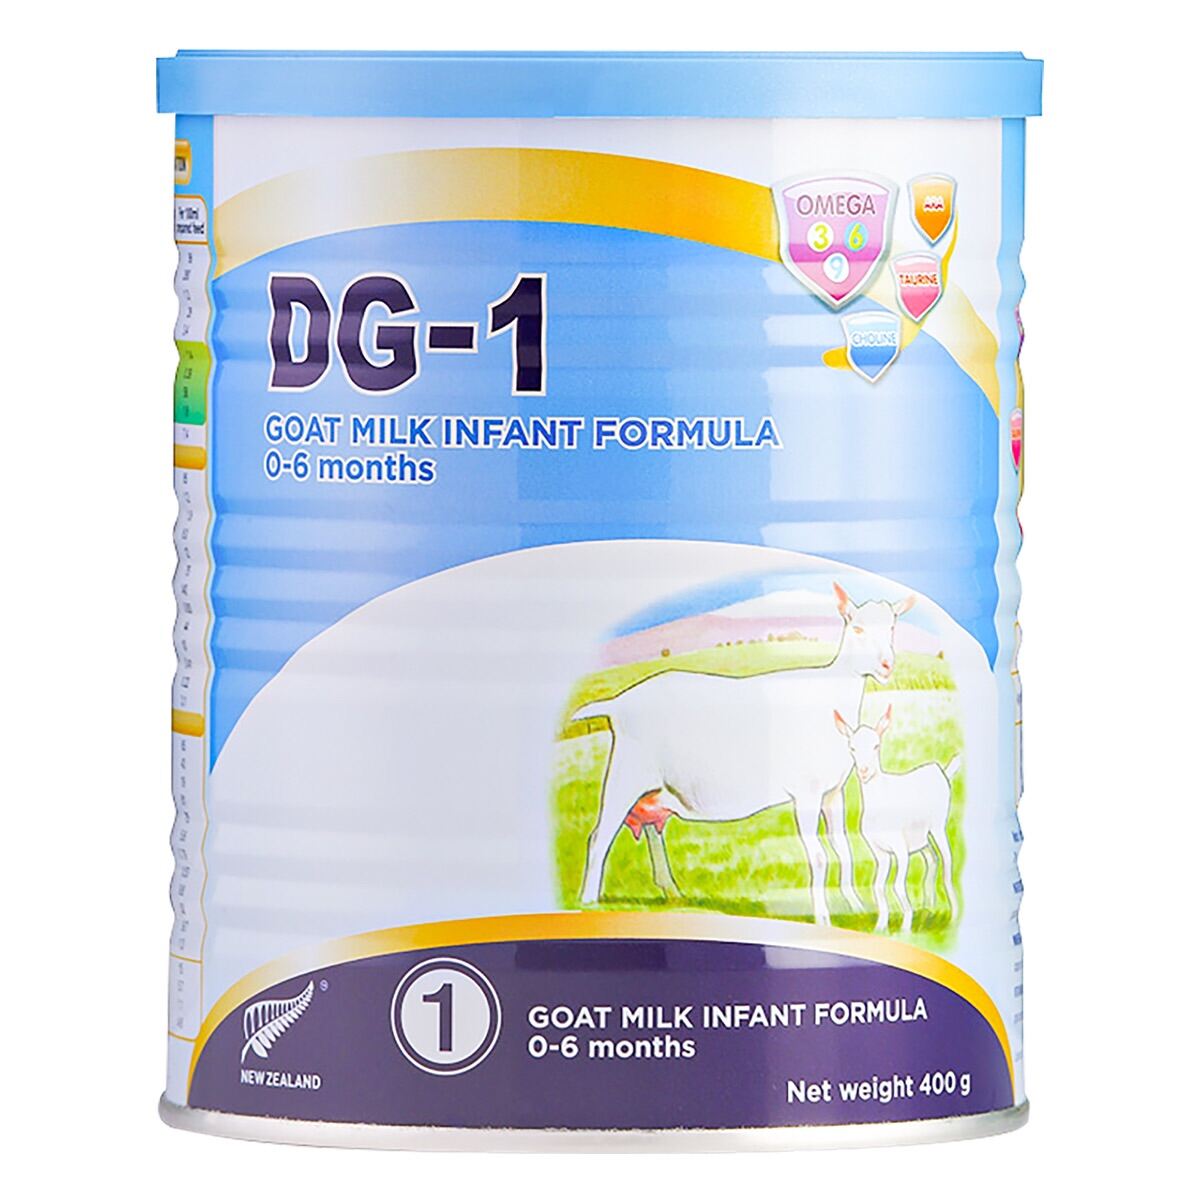 Combo 2 hộp sữa dê DG-1 dành cho trẻ từ 0-6 tháng